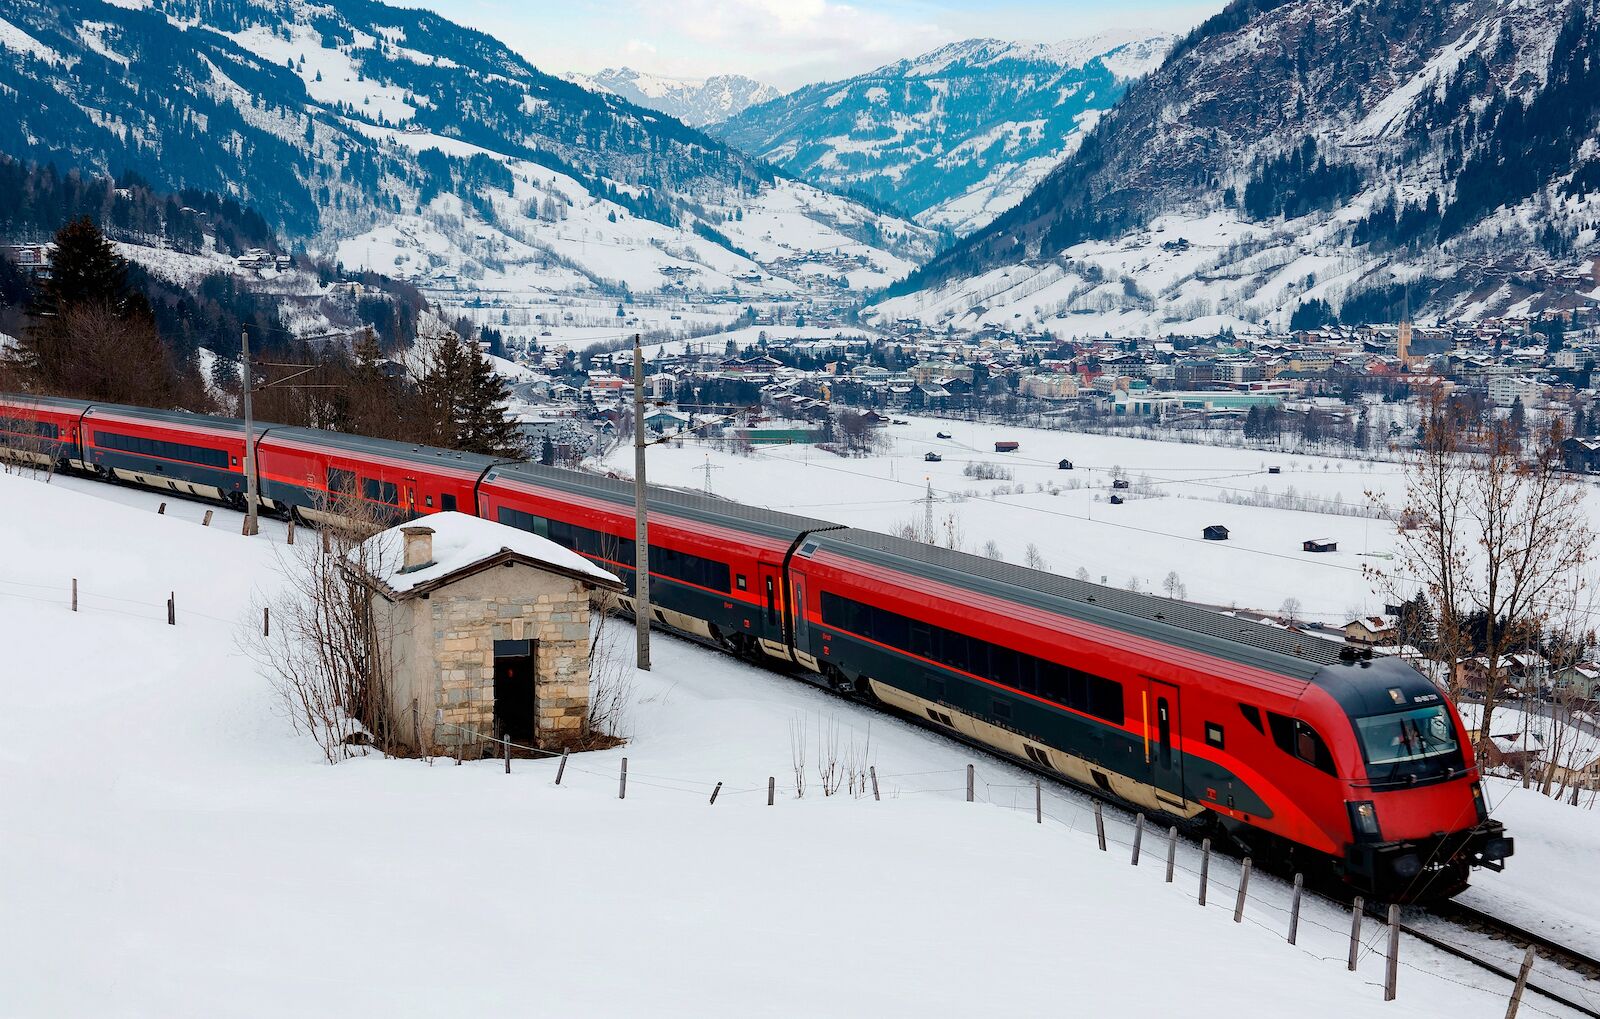 A Railjet train in Austria